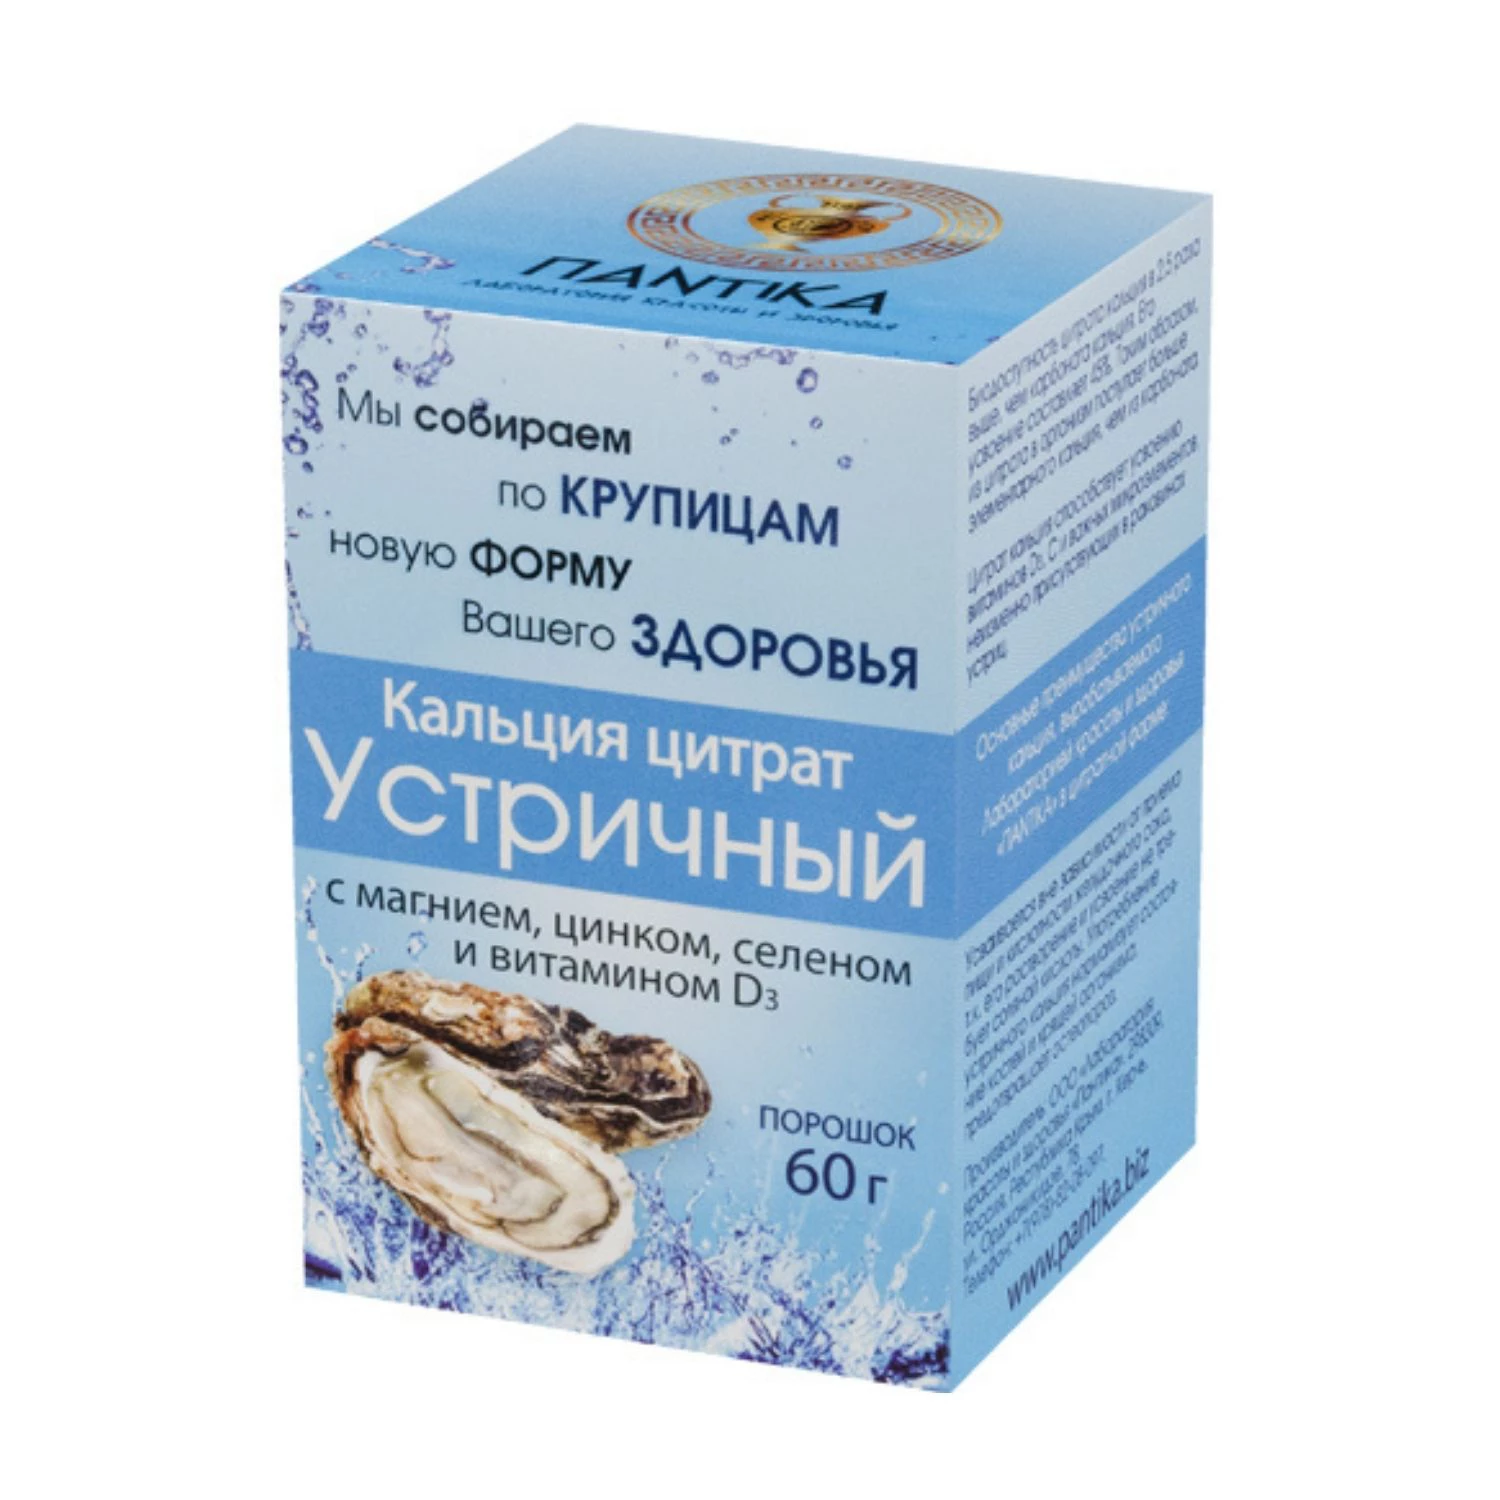 Кальция цитрат с марганцем, цинком, селеном и витамином Д3 Крымский фото 1